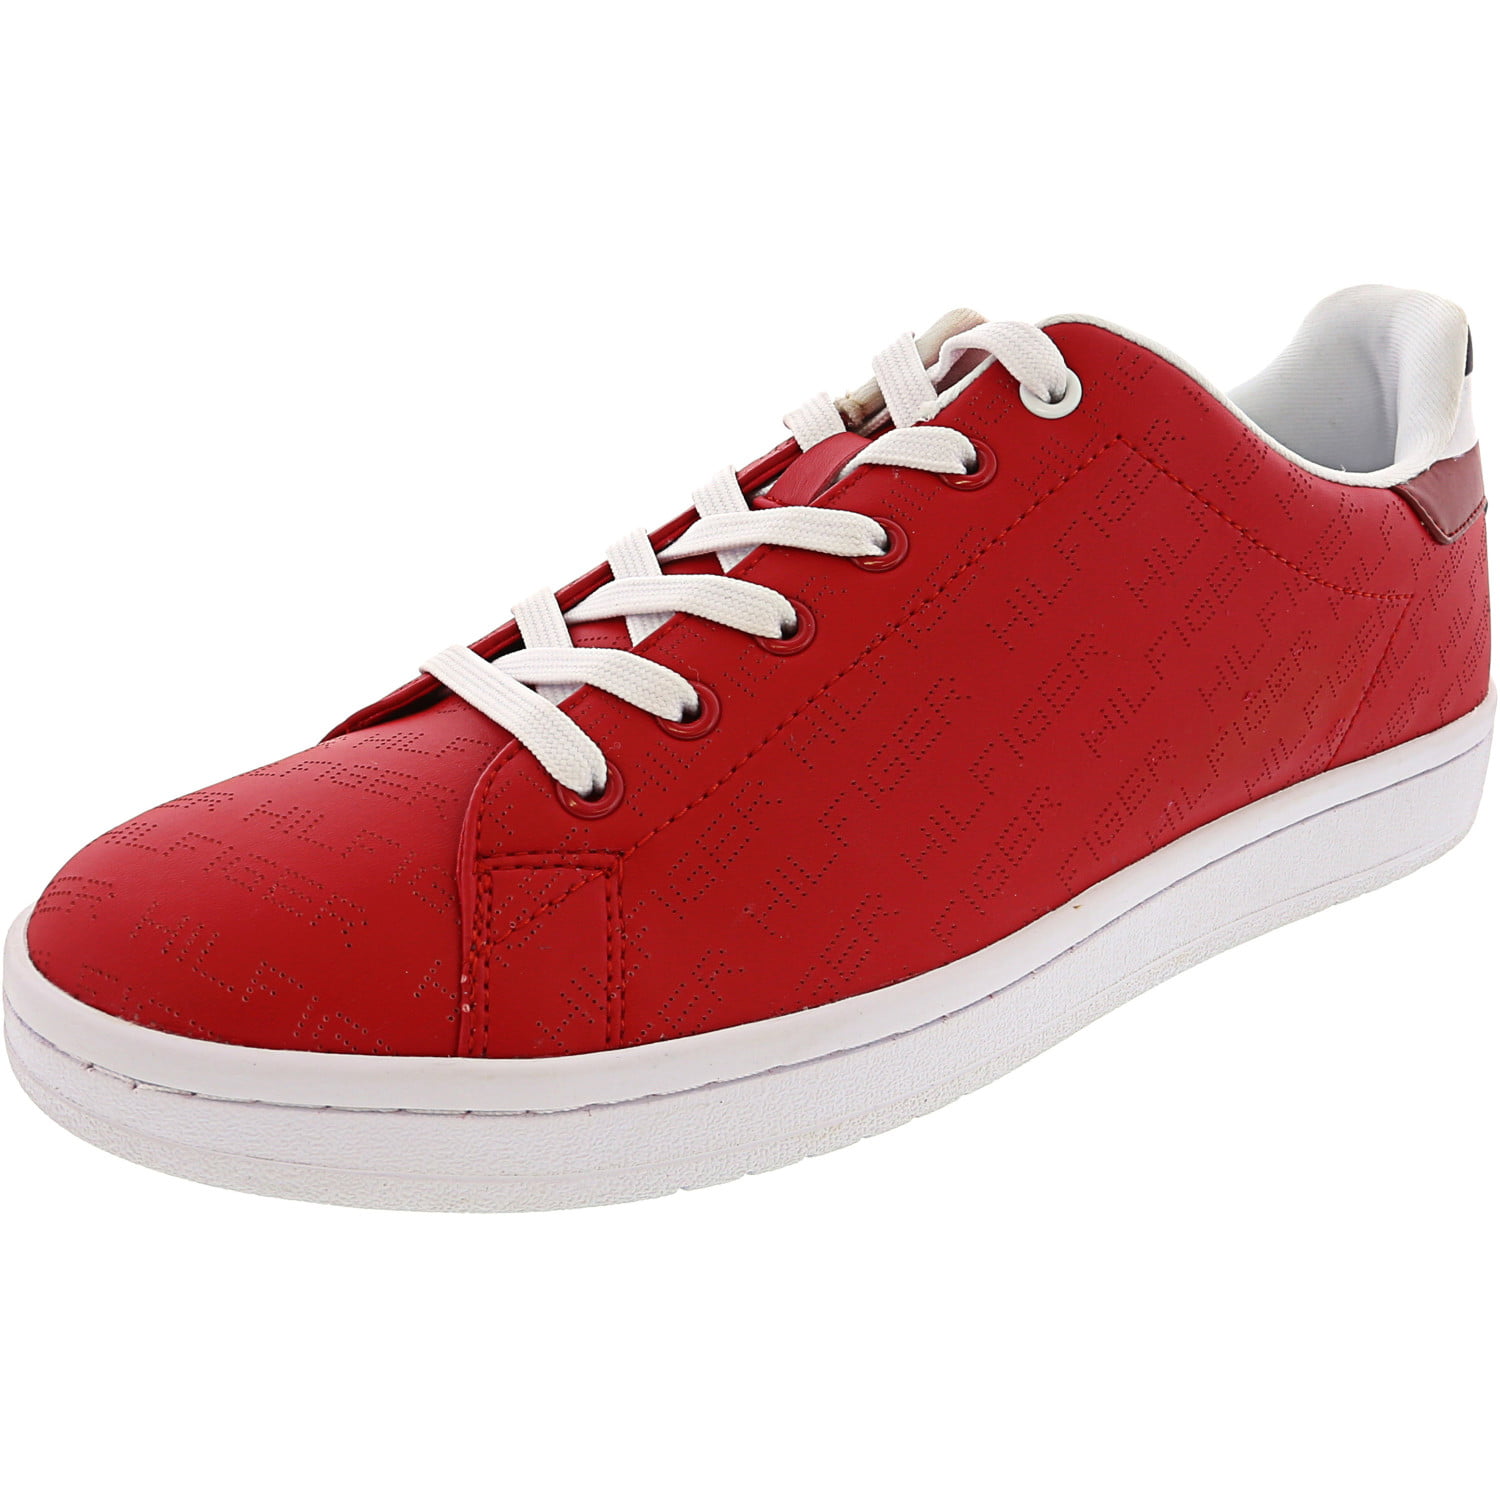 dark red sneakers